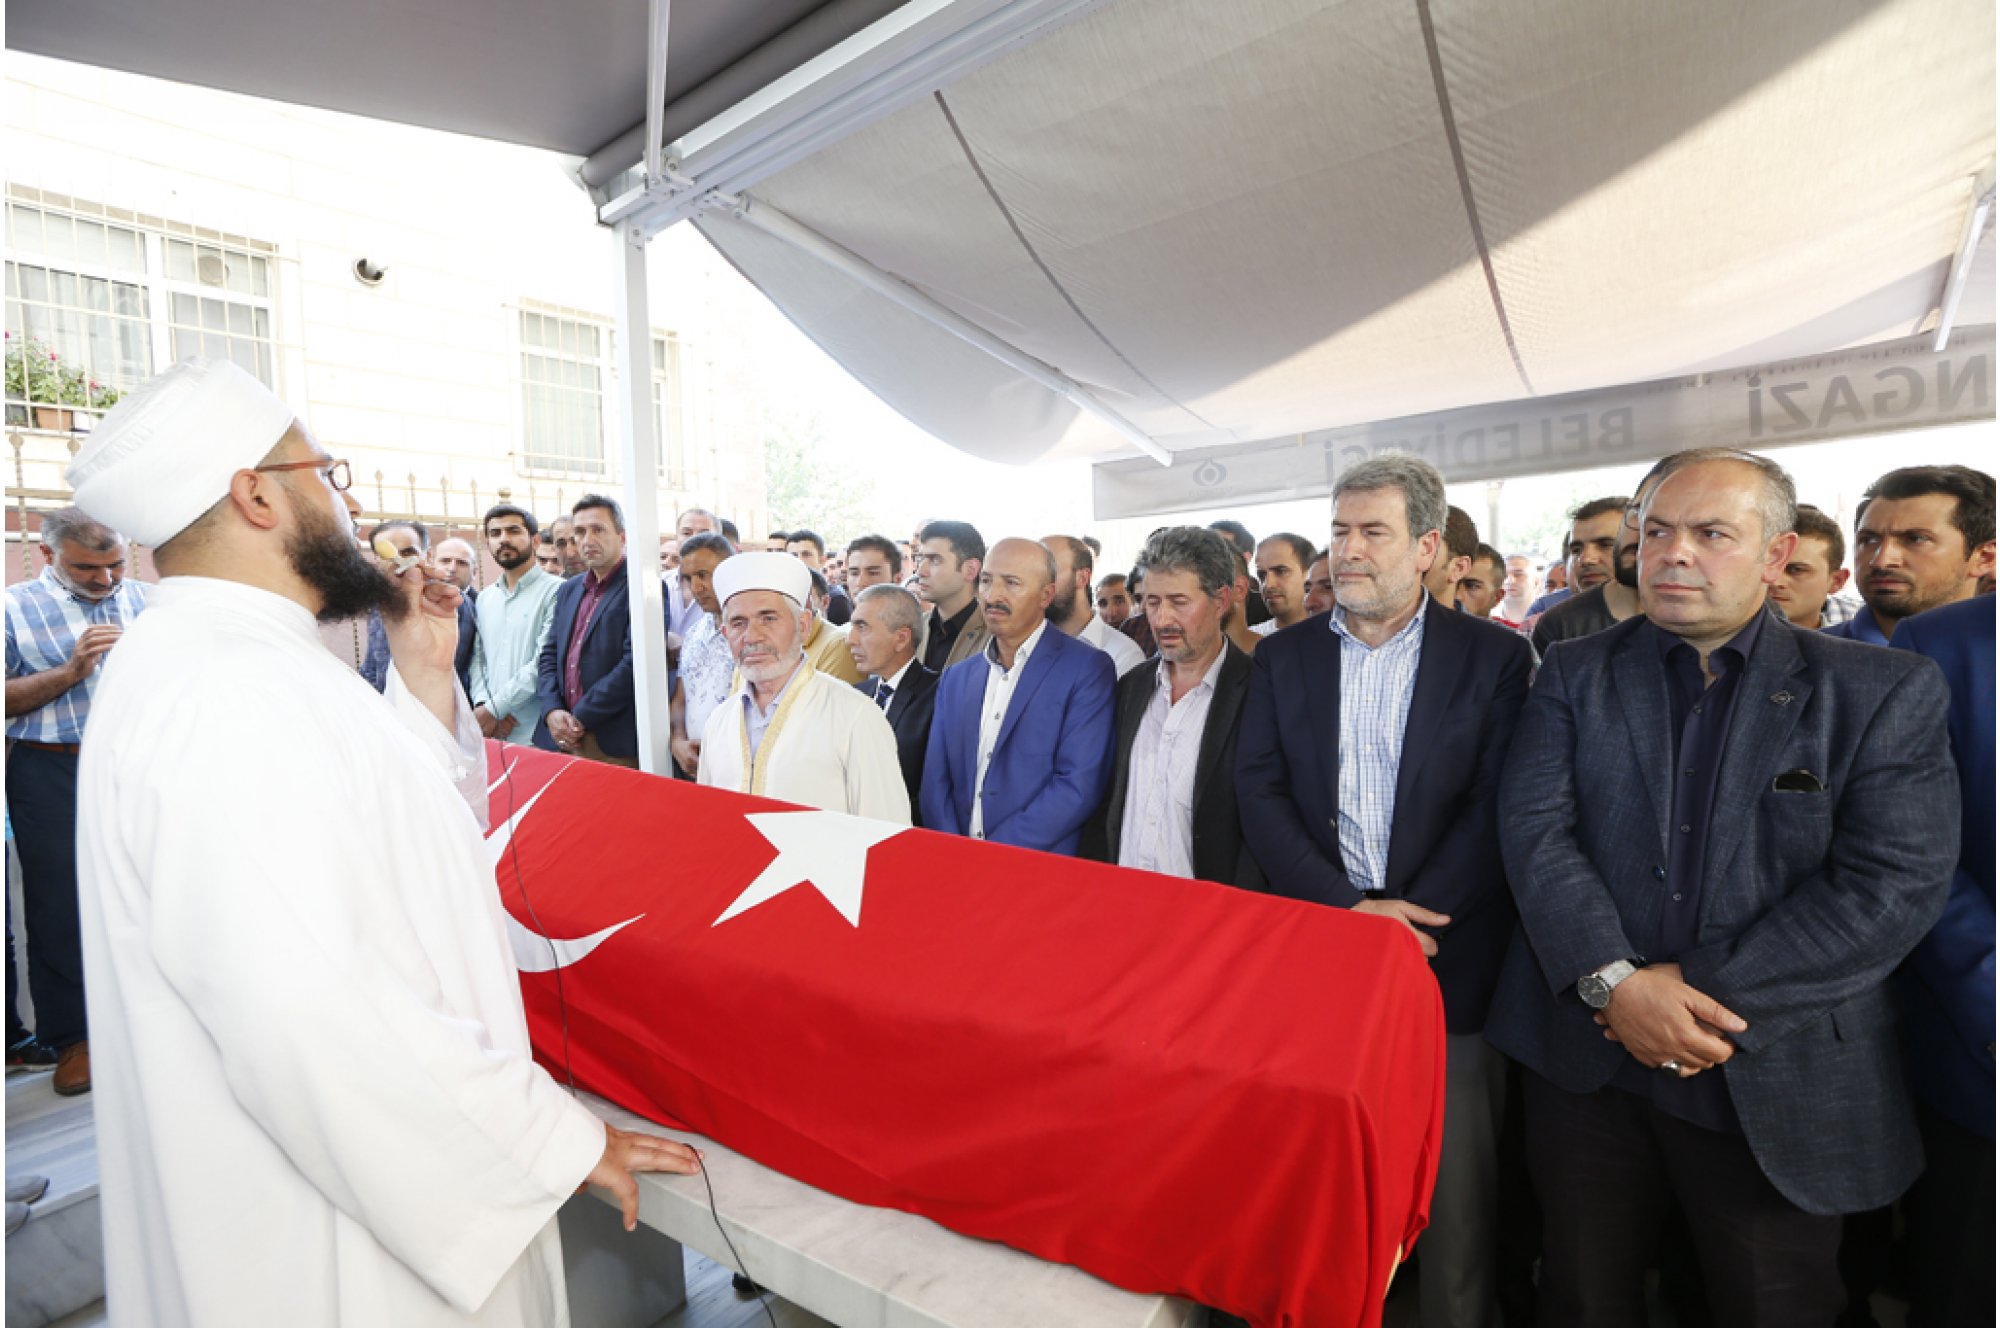 Cenaze törenine Dündar'ın ailesi ve yakınlarının yanı sıra İstanbul Milletvekili Halis Dalkılıç, Sultangazi Belediye Başkanı Cahit Altunay  ile çok sayıda vatandaş katıldı.